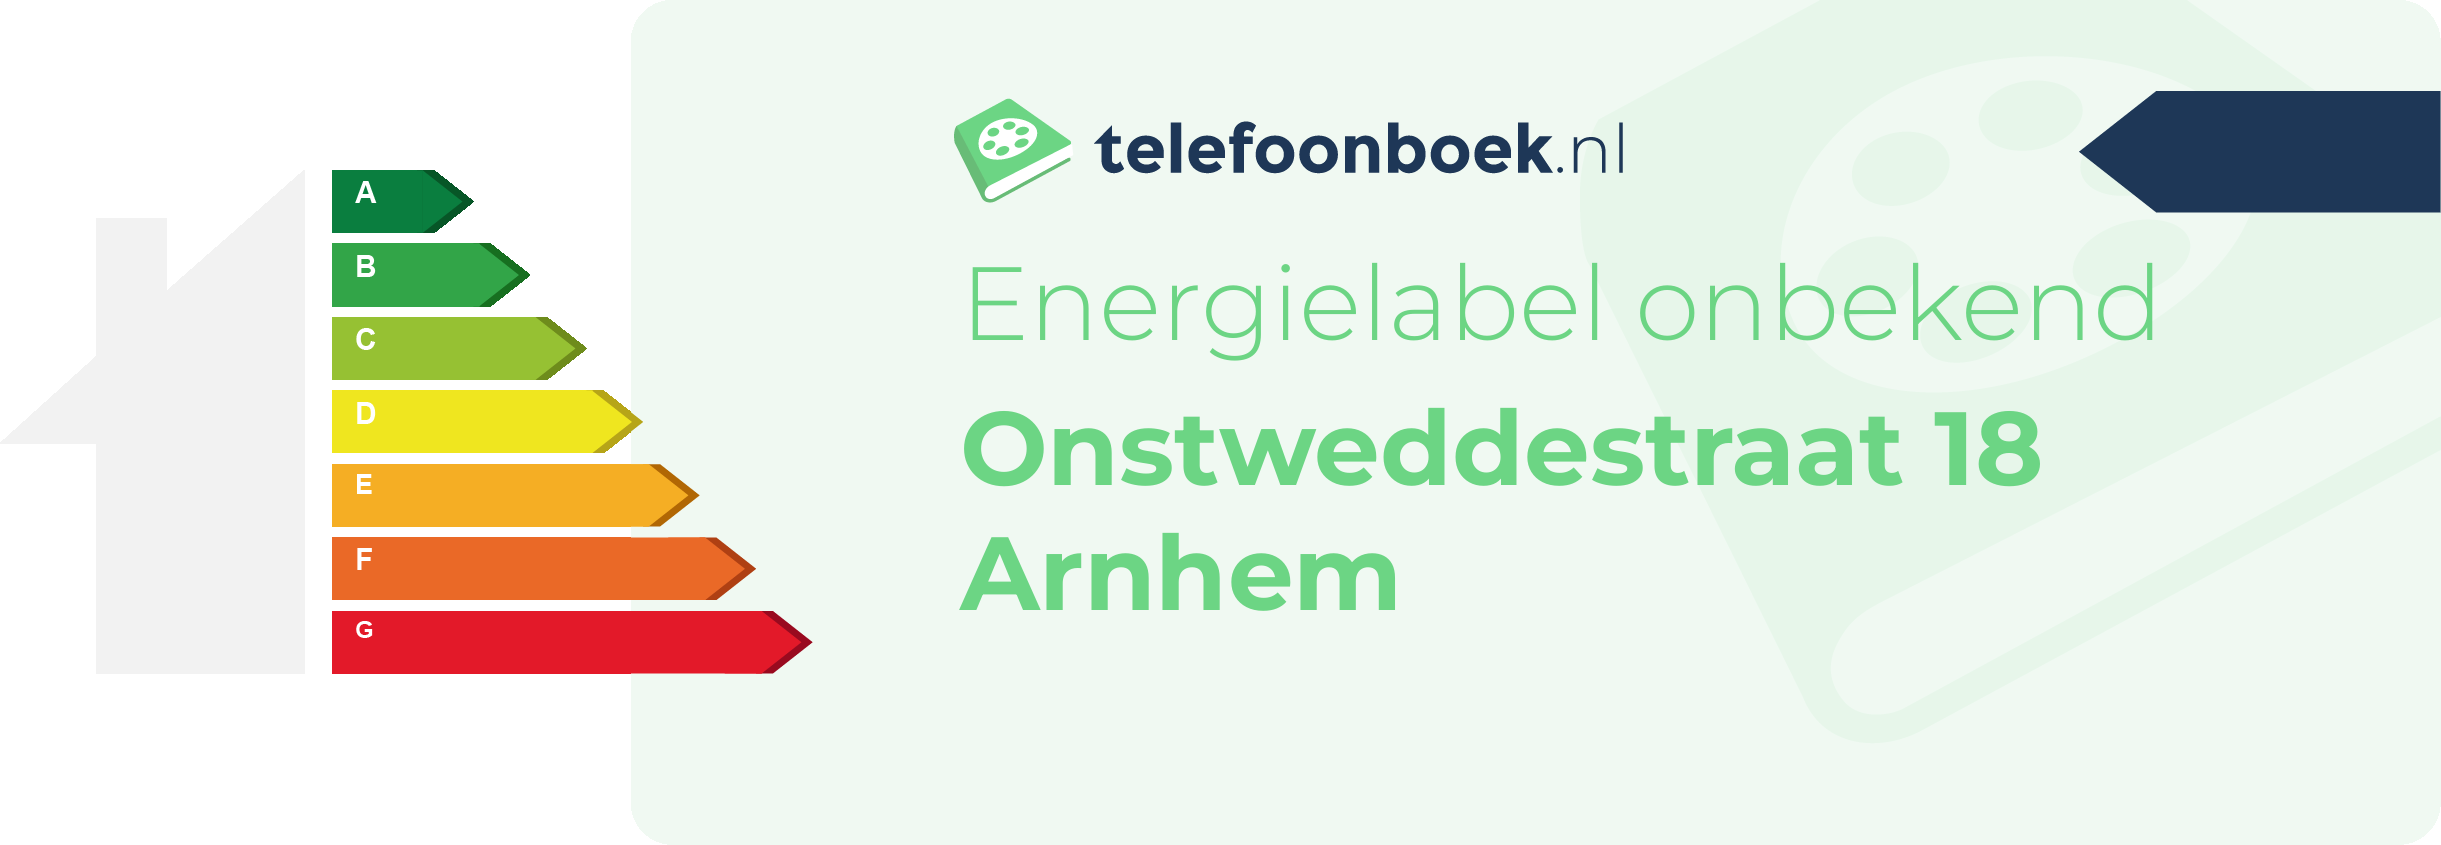 Energielabel Onstweddestraat 18 Arnhem